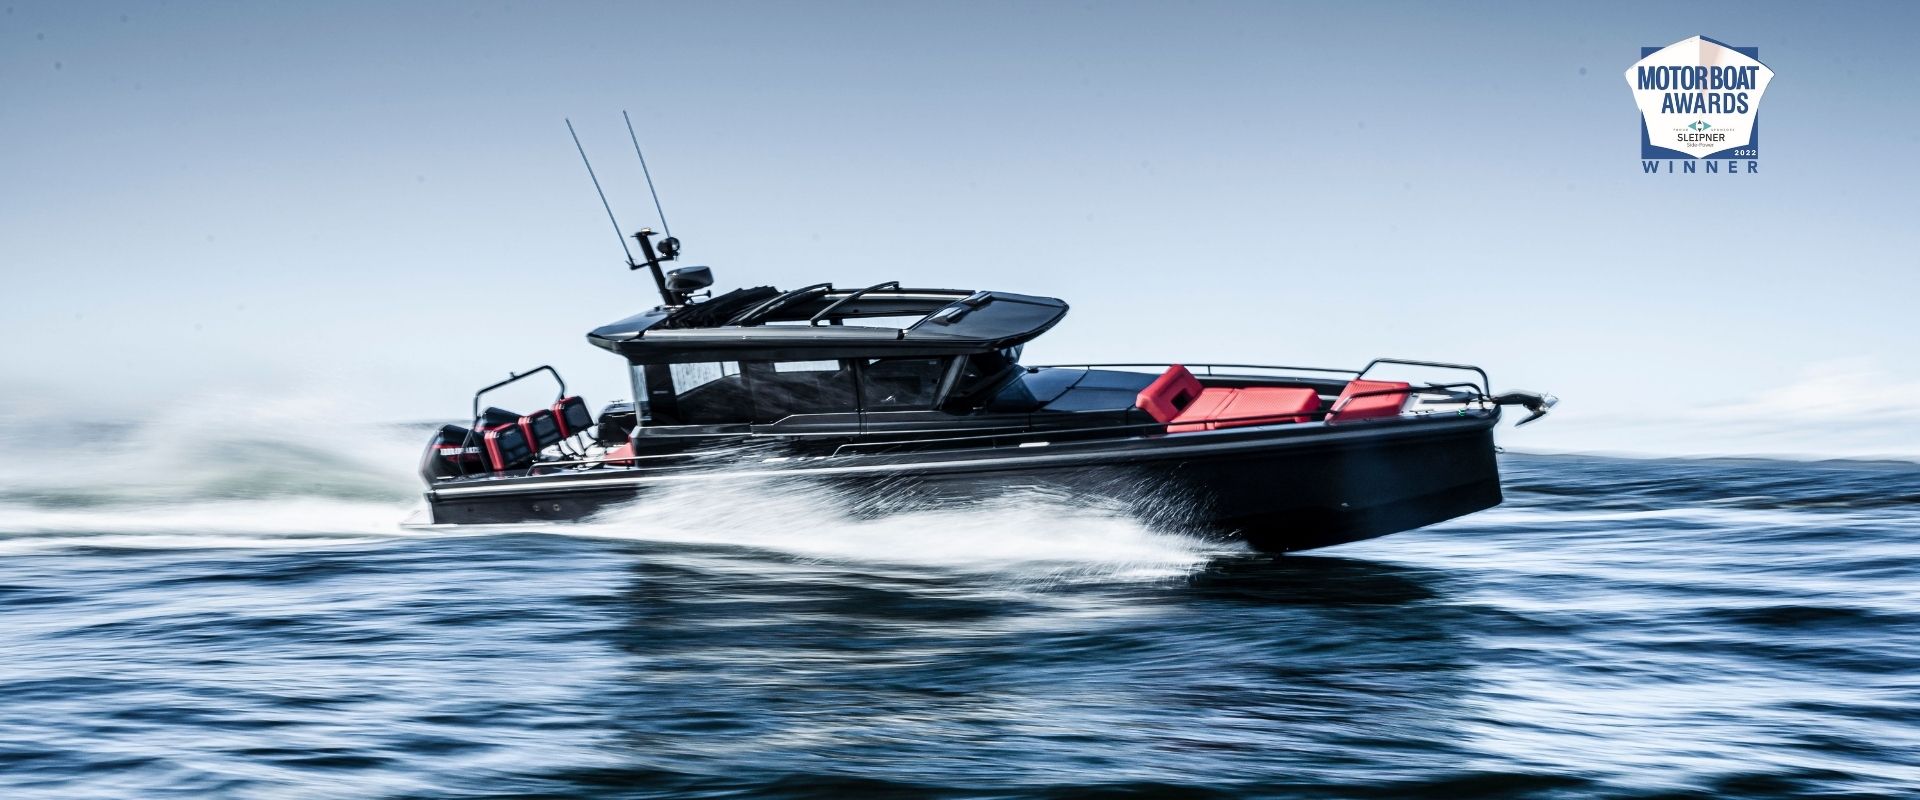 BRABUS Shadow 900 XC Wins Motor Boat Awards 2022